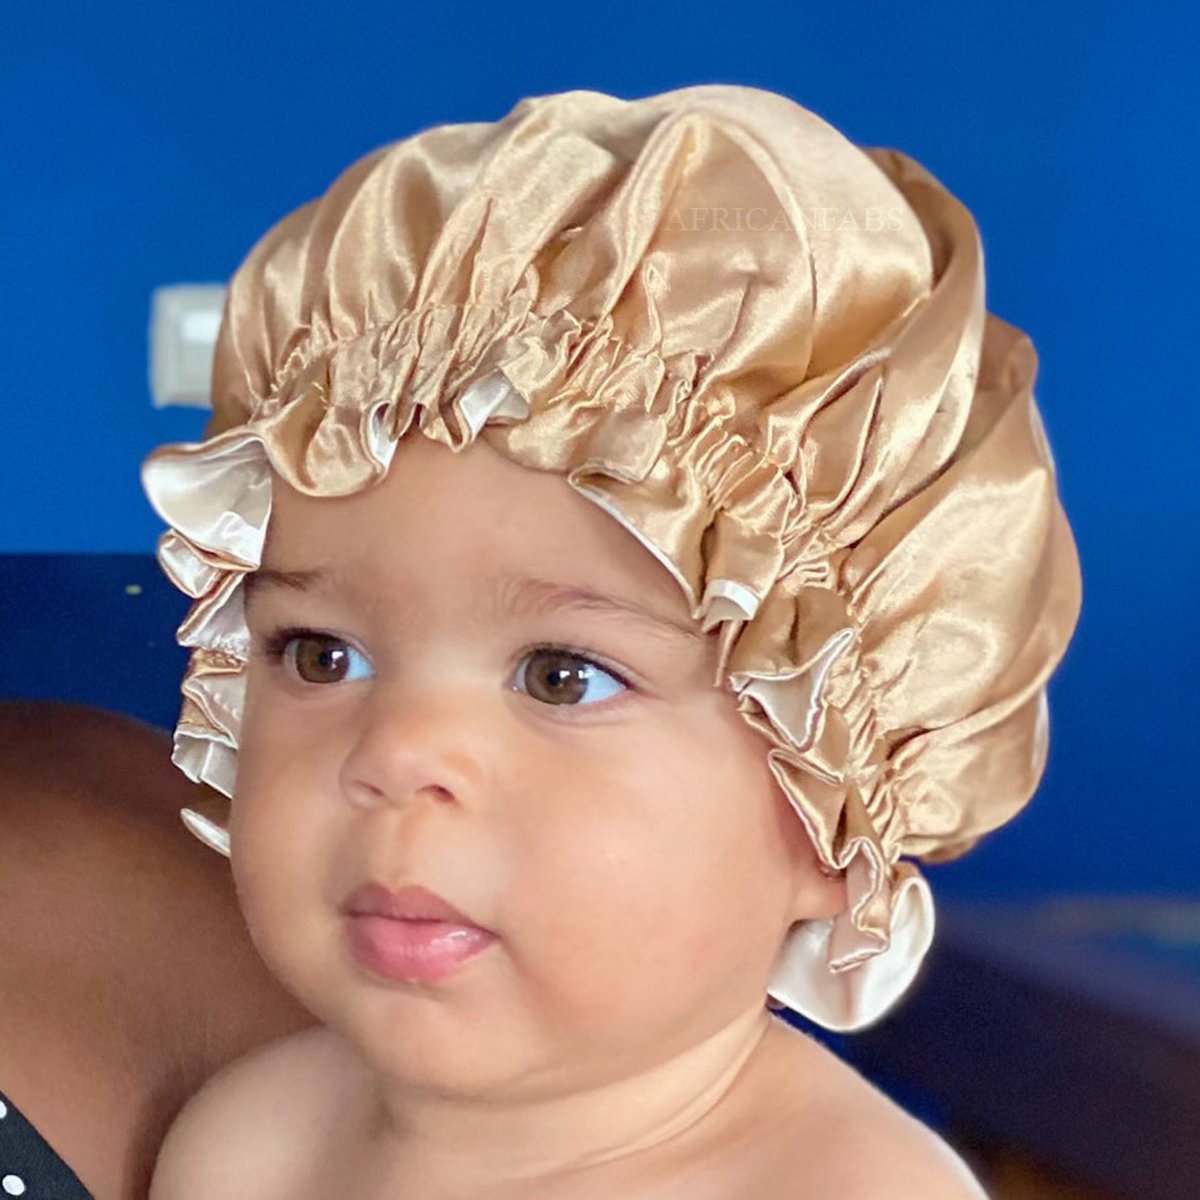 Kaki Satijnen Slaapmuts voor Kinderen van 3-7 jaar AfricanFabs® / Kinder Hair Bonnet / Haar bonnet van Satijn / Satin bonnet